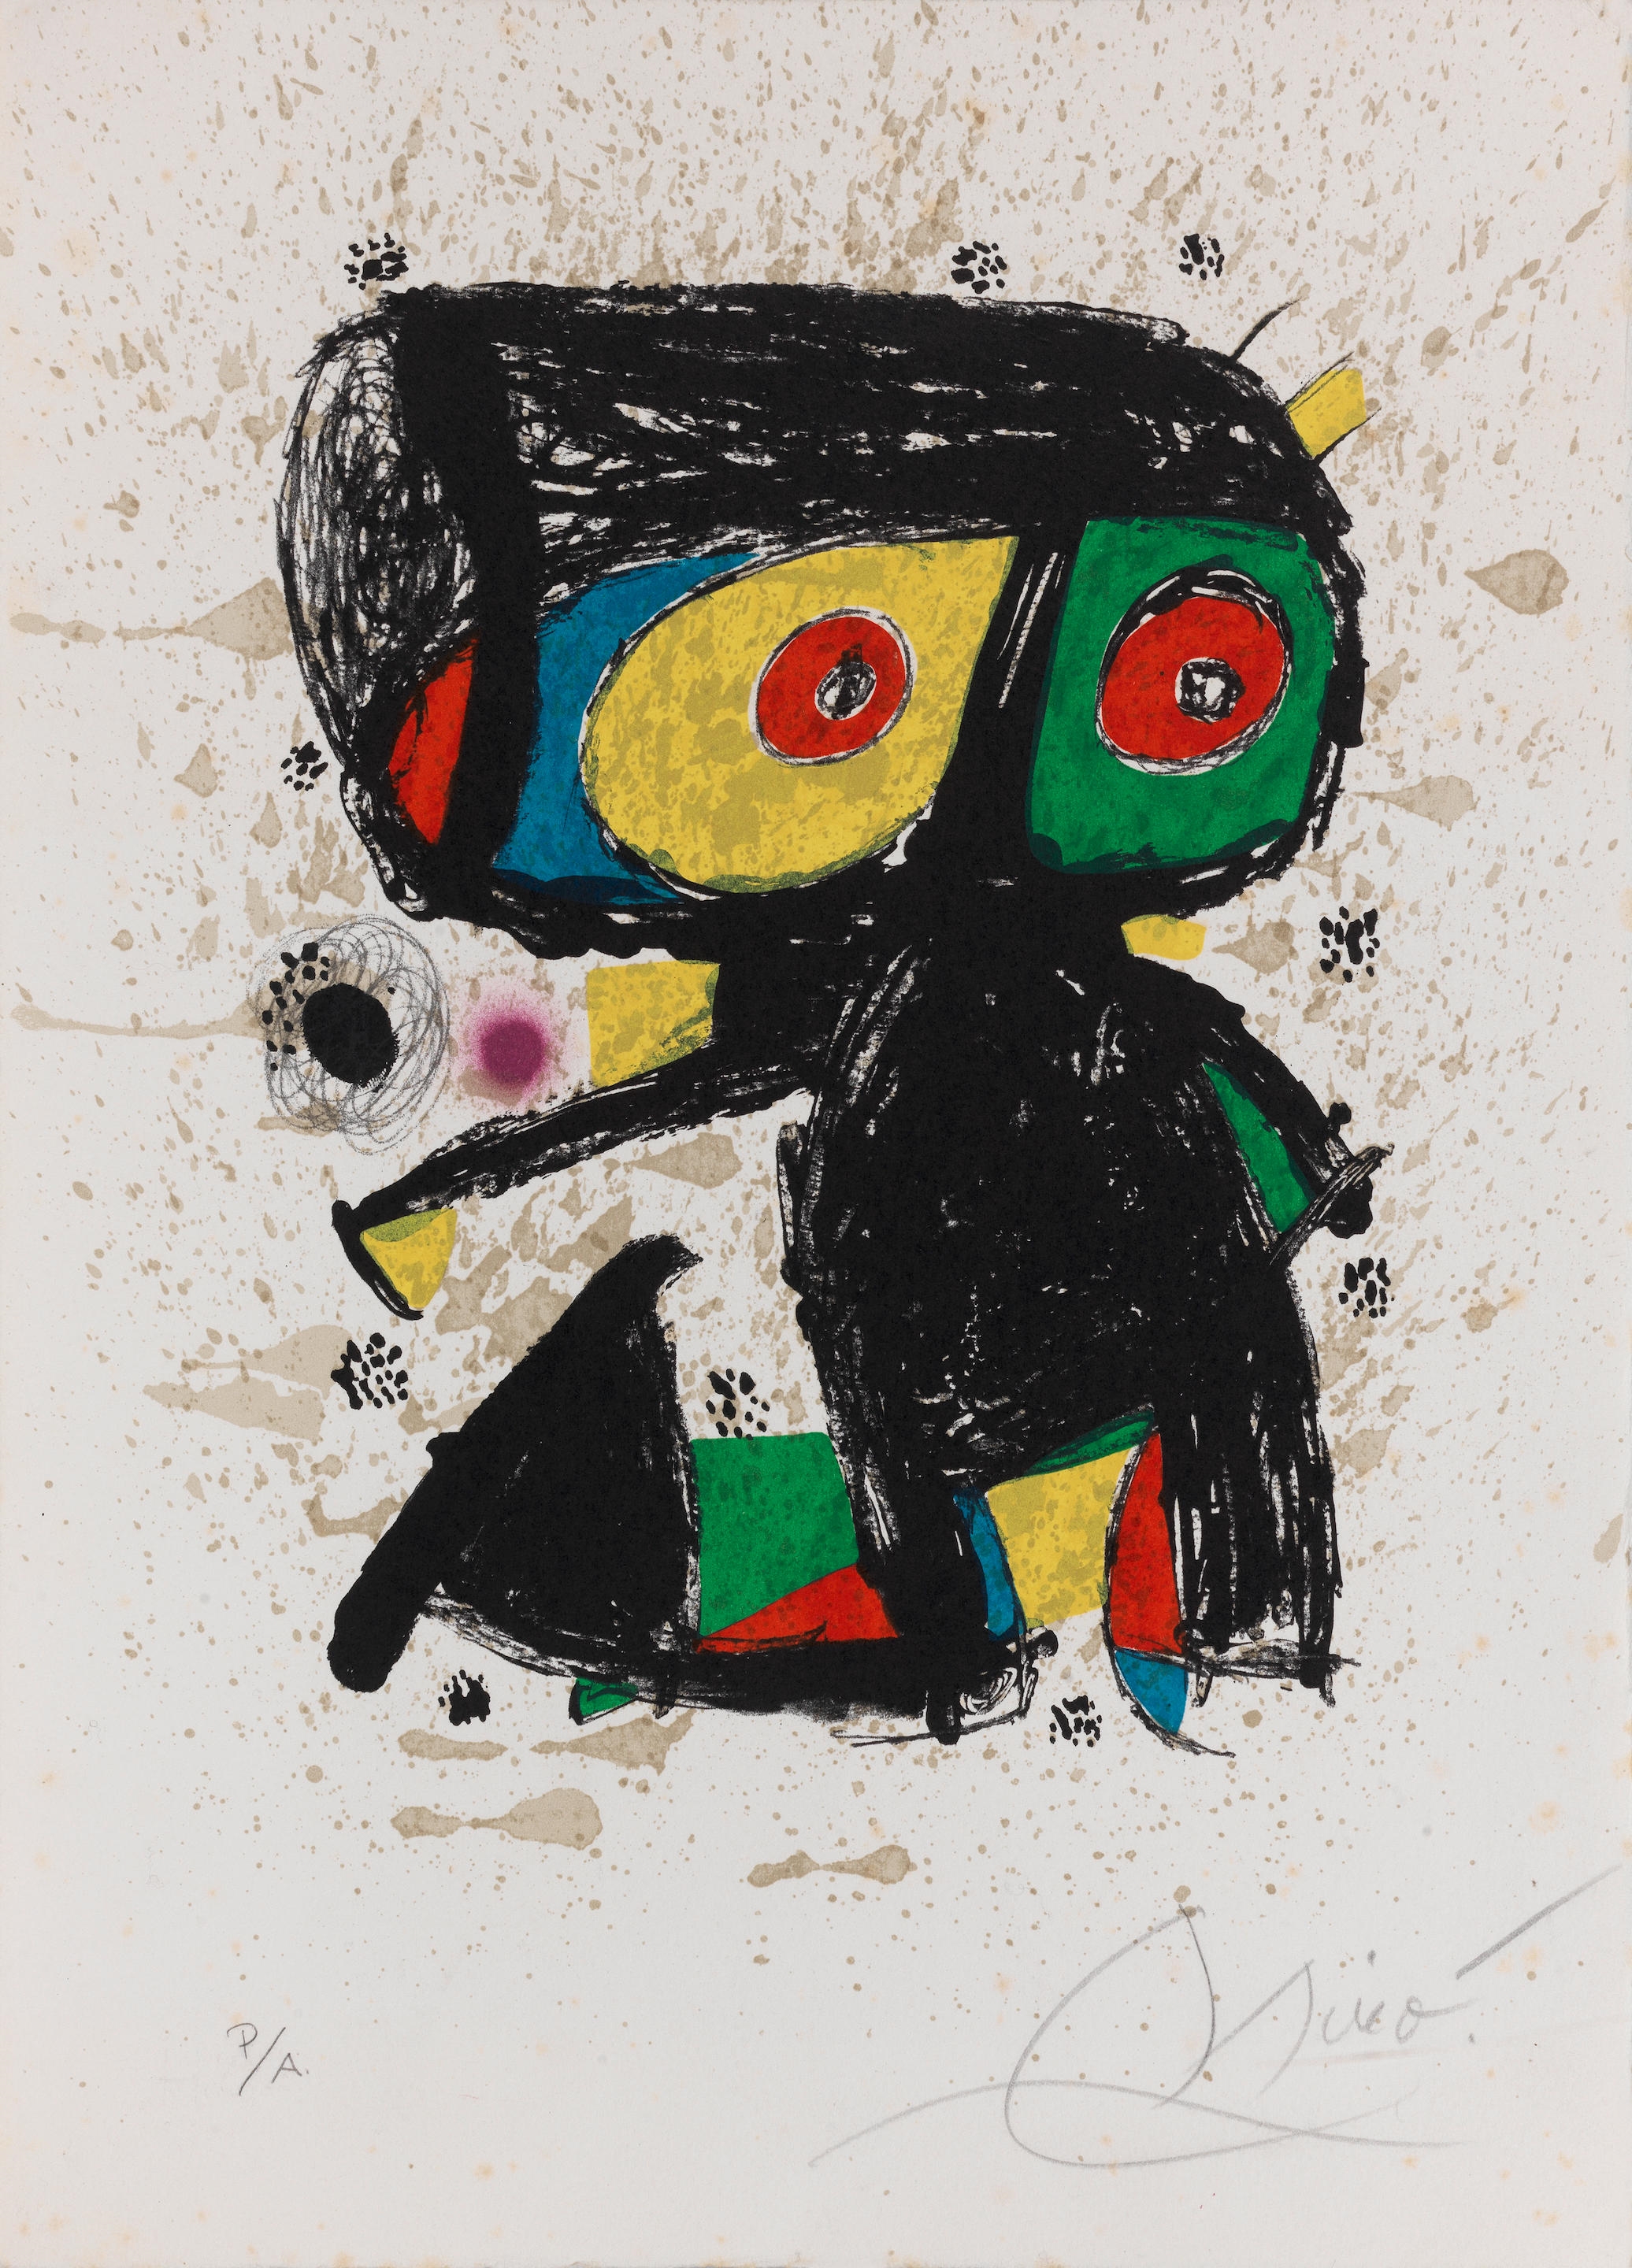 Polígrafa XV Años by Joan Miró, 1979